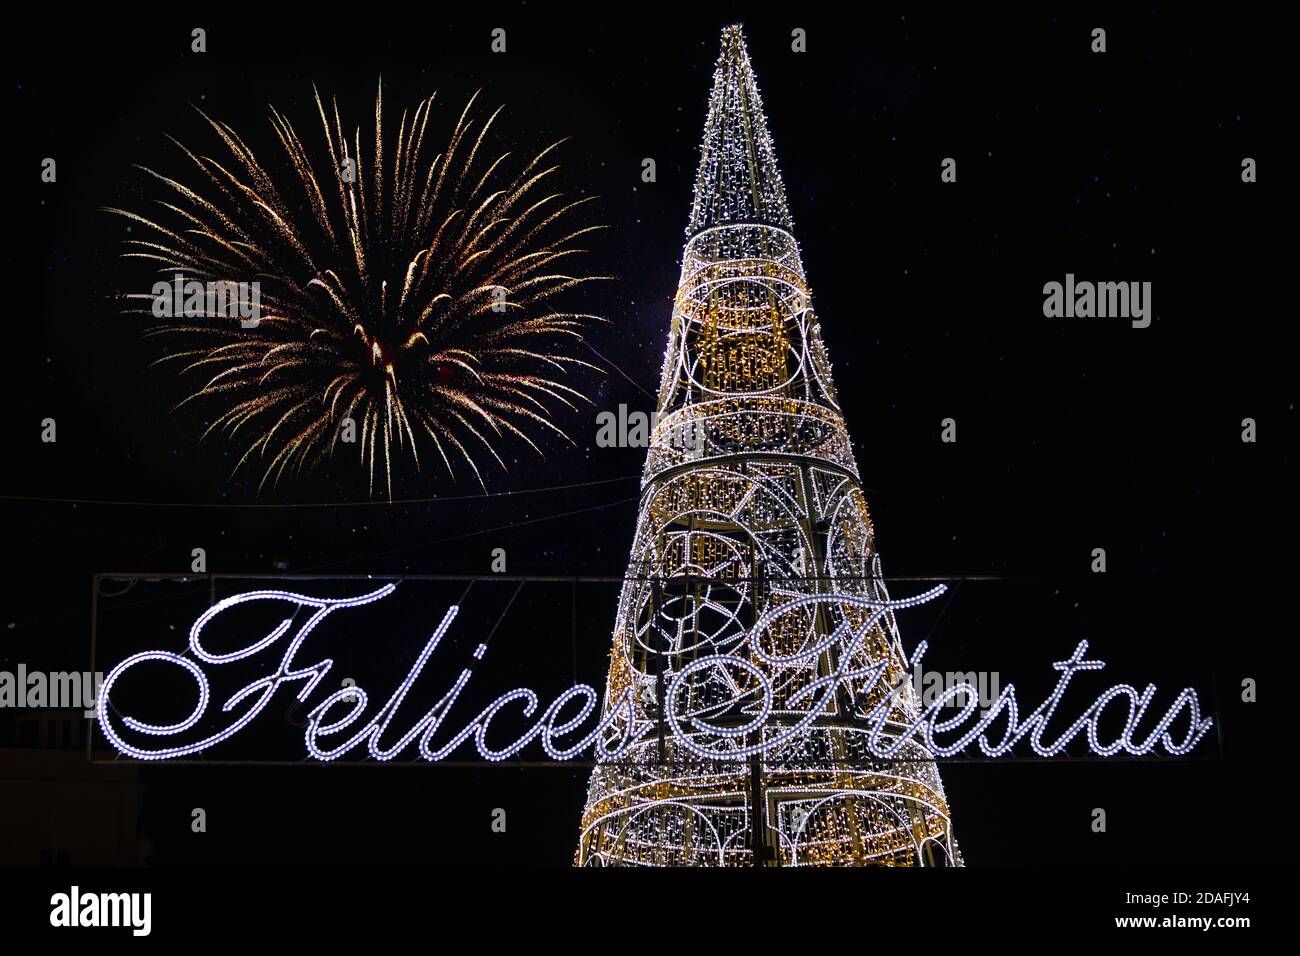 Weihnachtsbaum beleuchtet neben dem Text Frohe Feiertage in Spanisch geschrieben und Feuerwerk am Himmel. Stockfoto